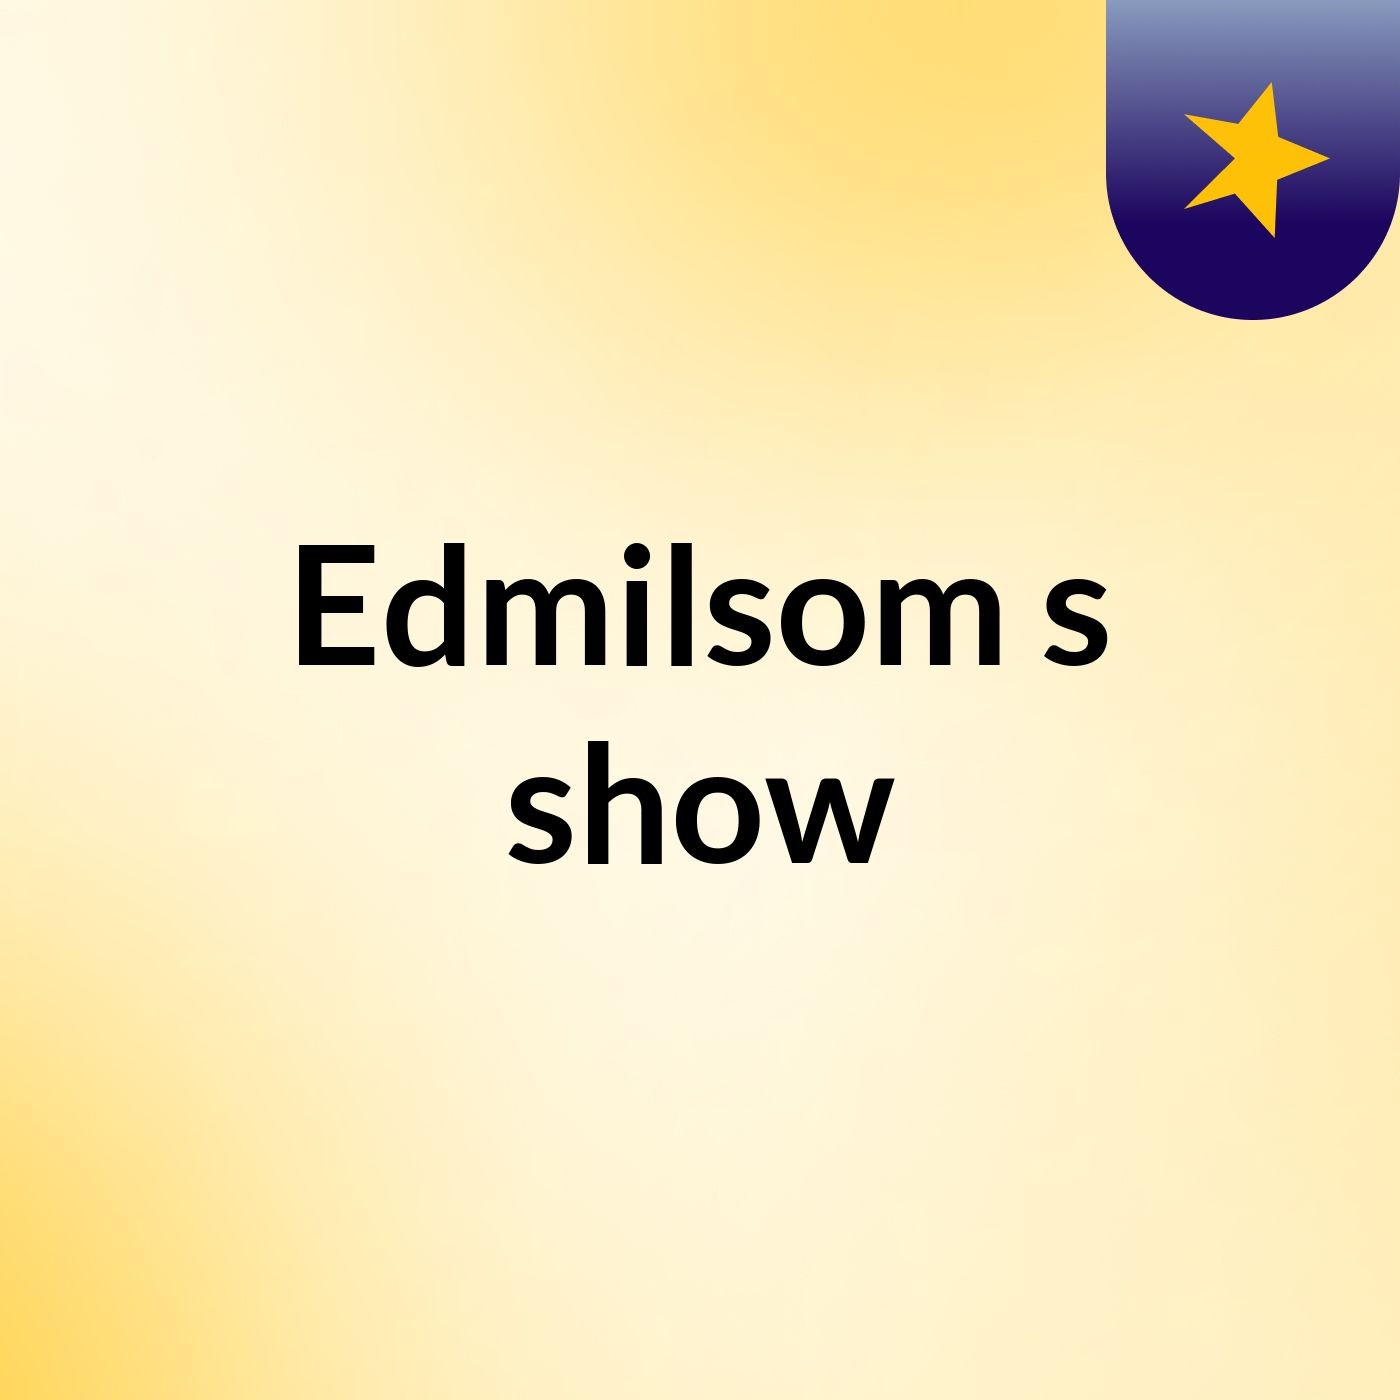 Edmilsom's show